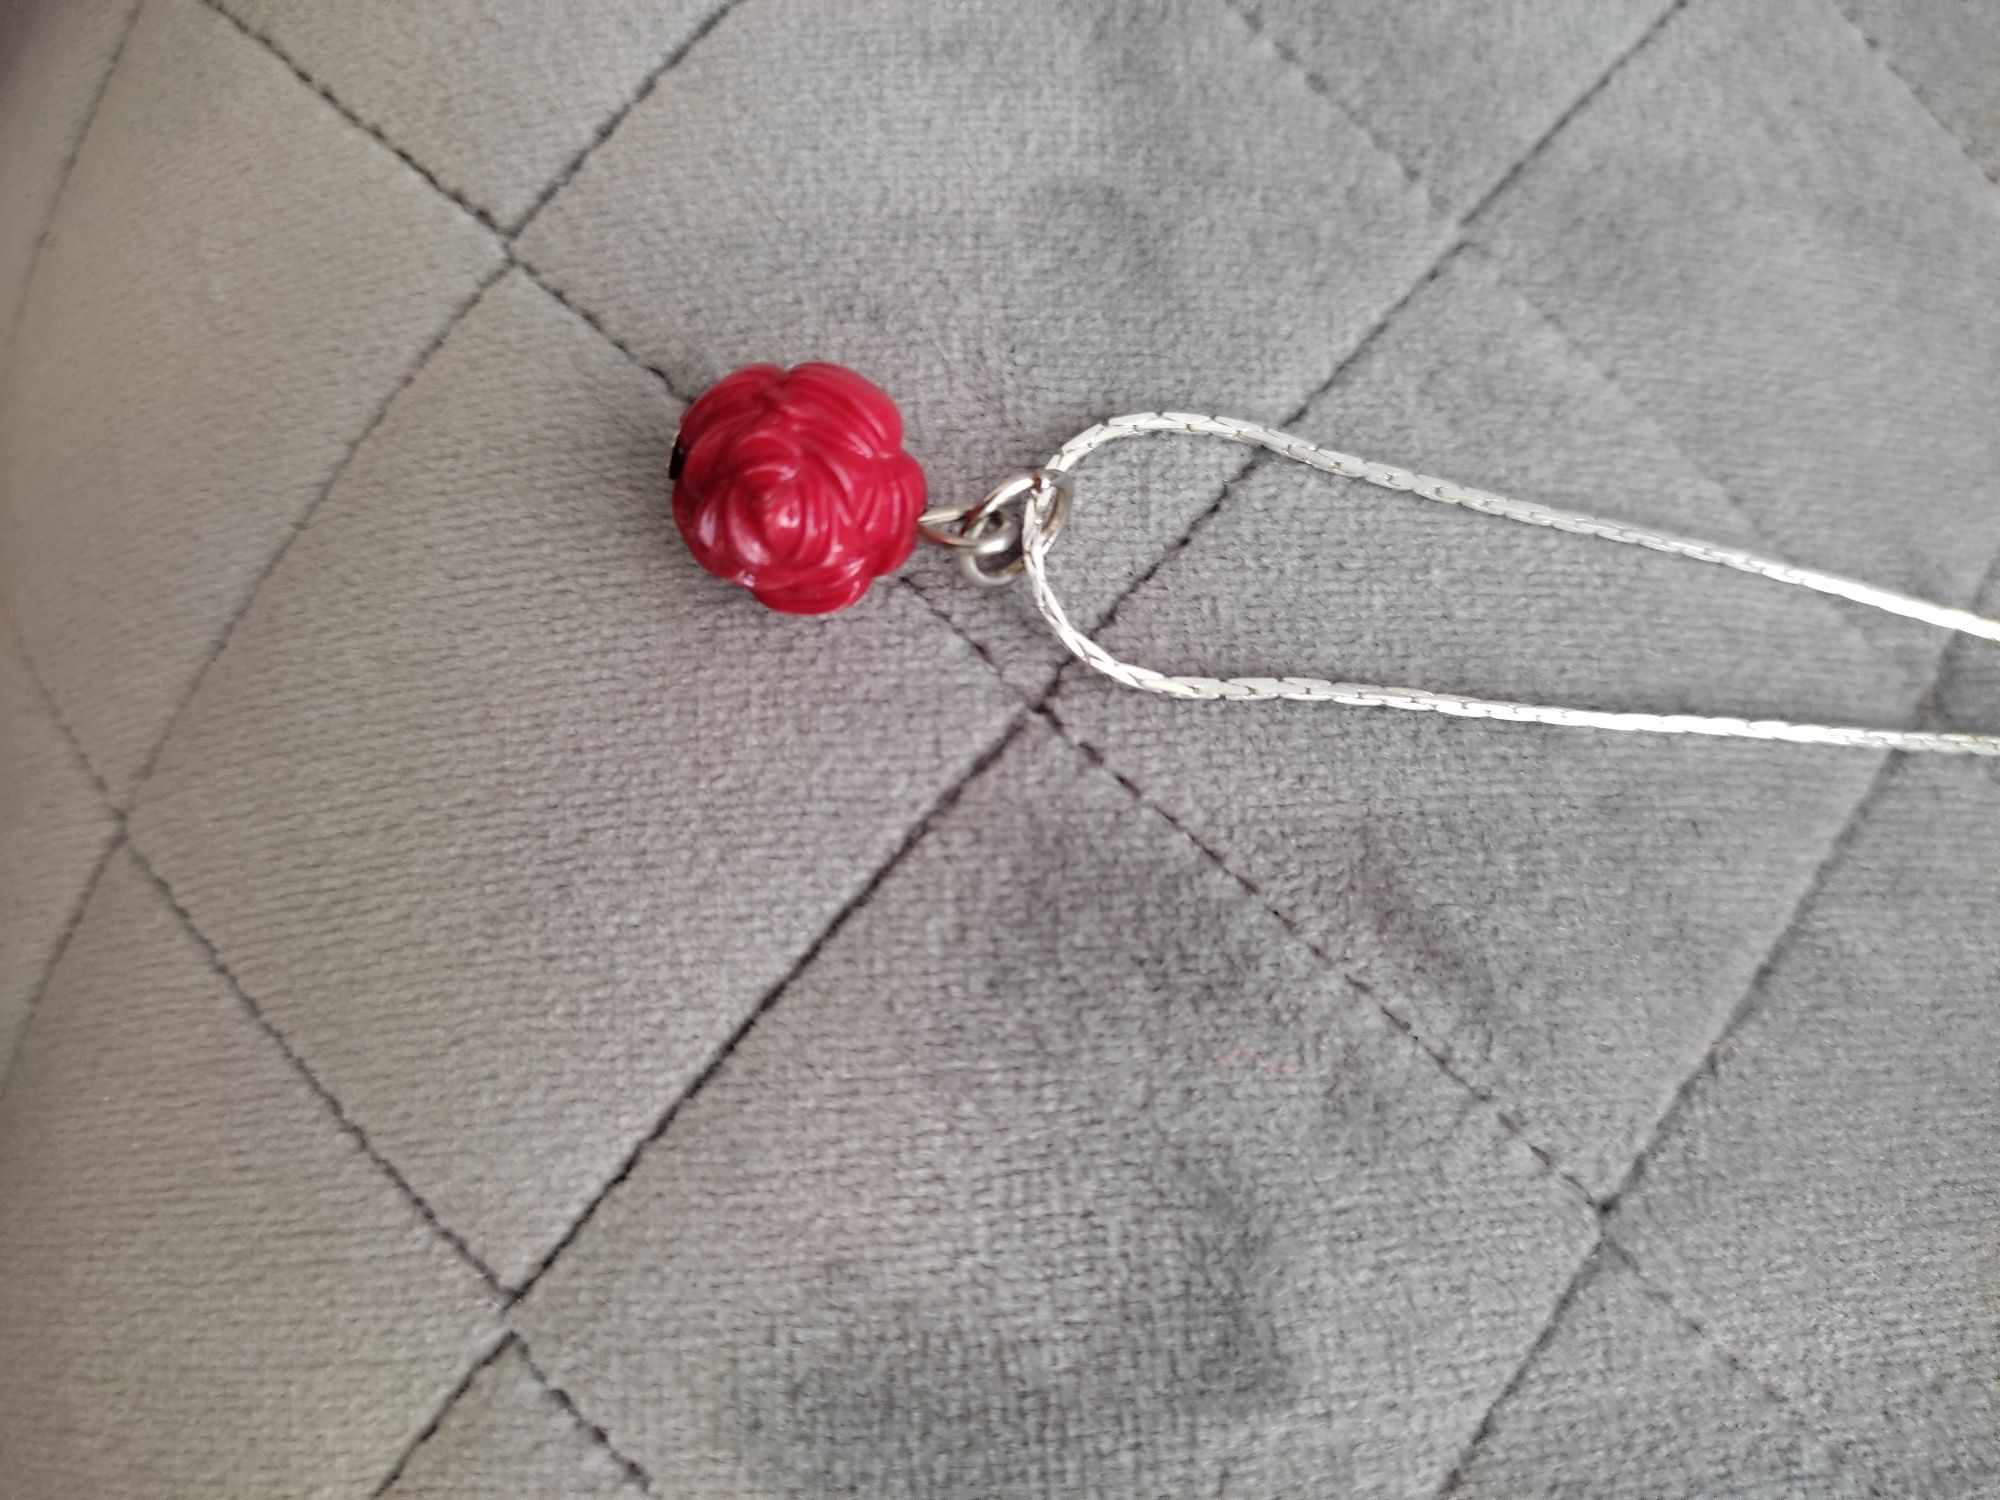 Łańcuszek z zawieszką w kształcie różyczki